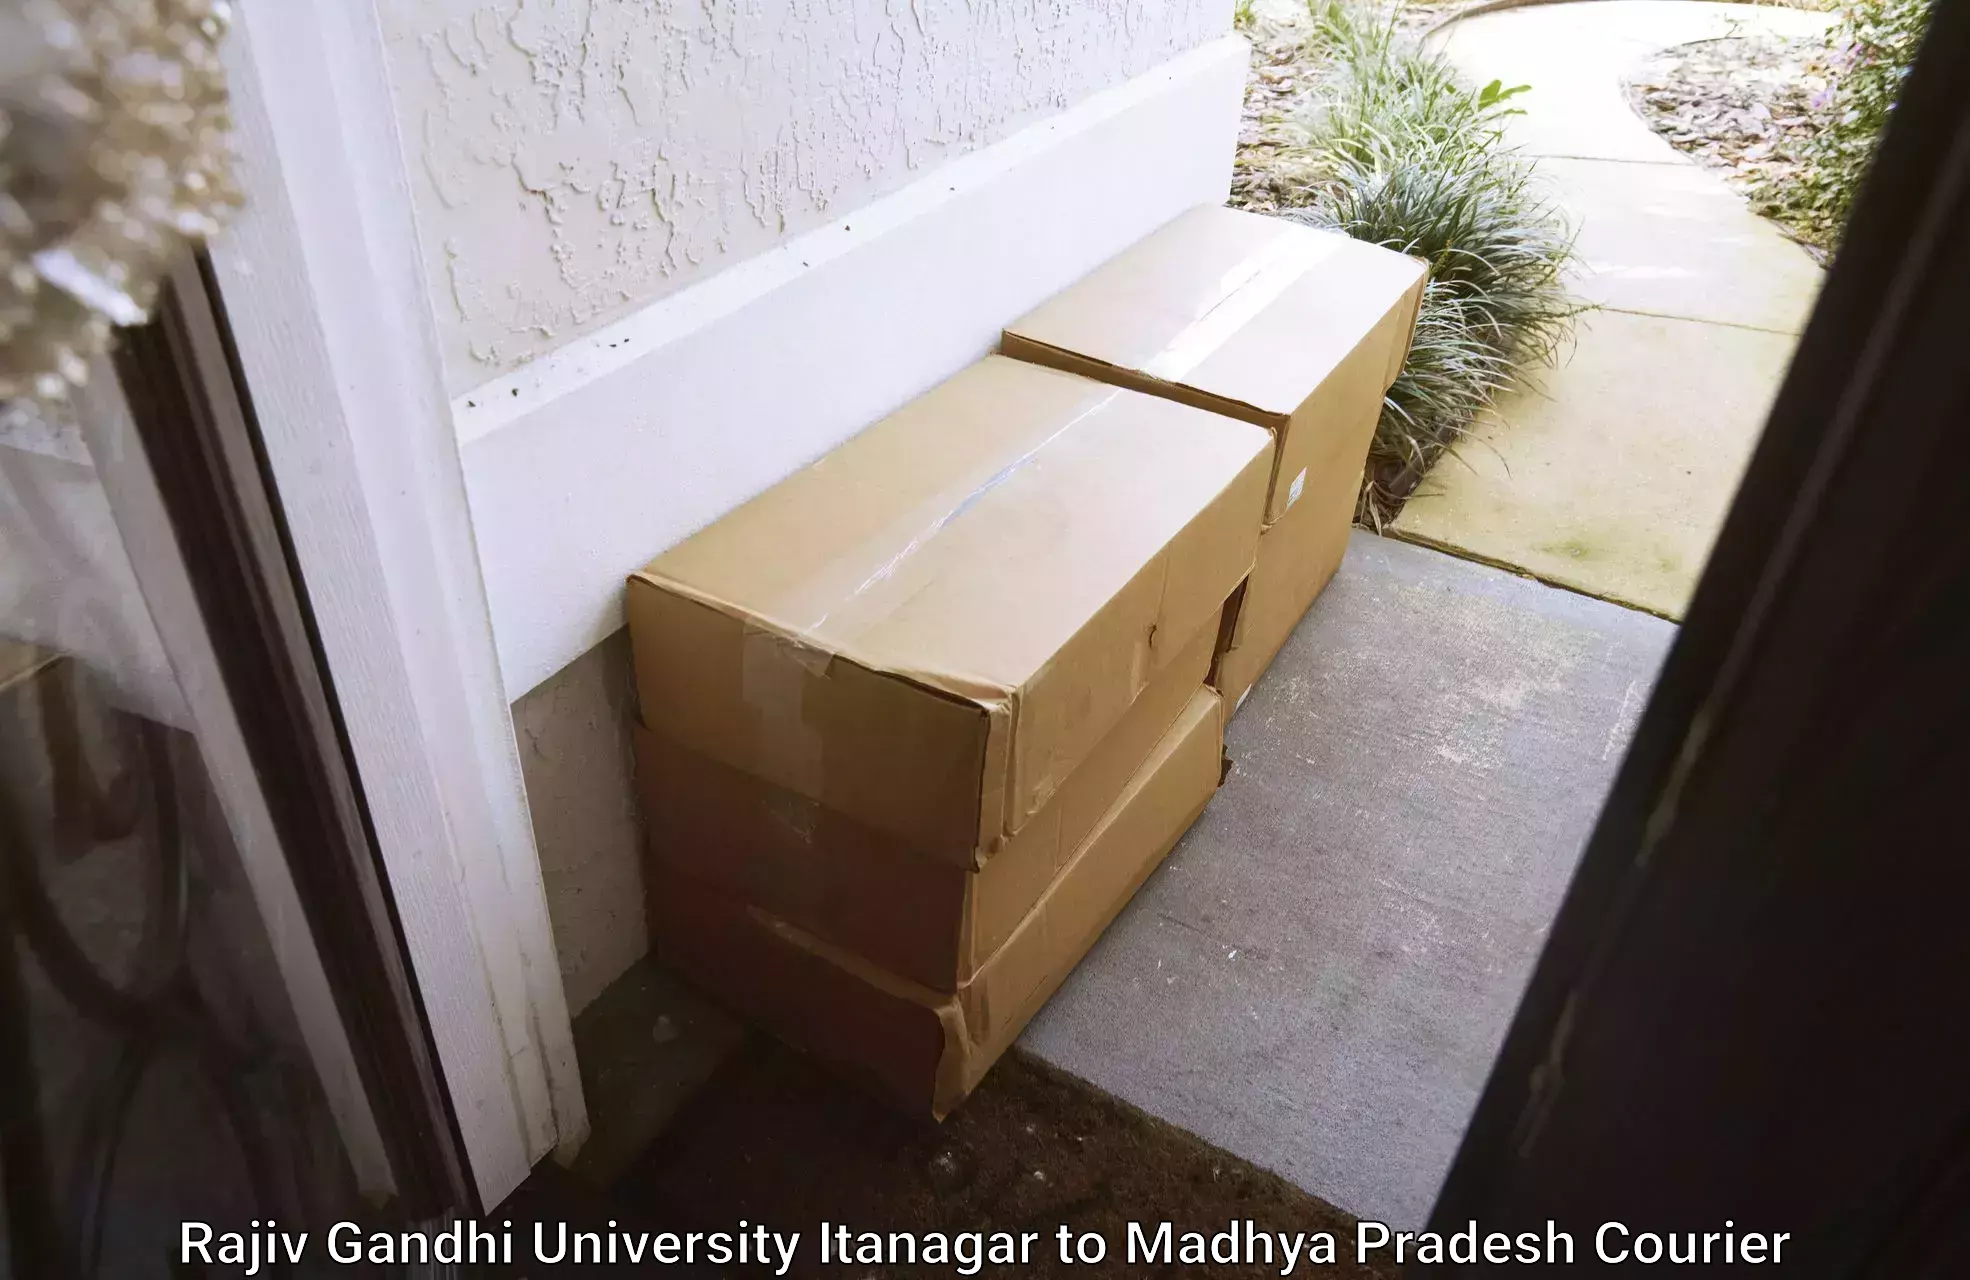 Efficient courier operations Rajiv Gandhi University Itanagar to Polay Kalan